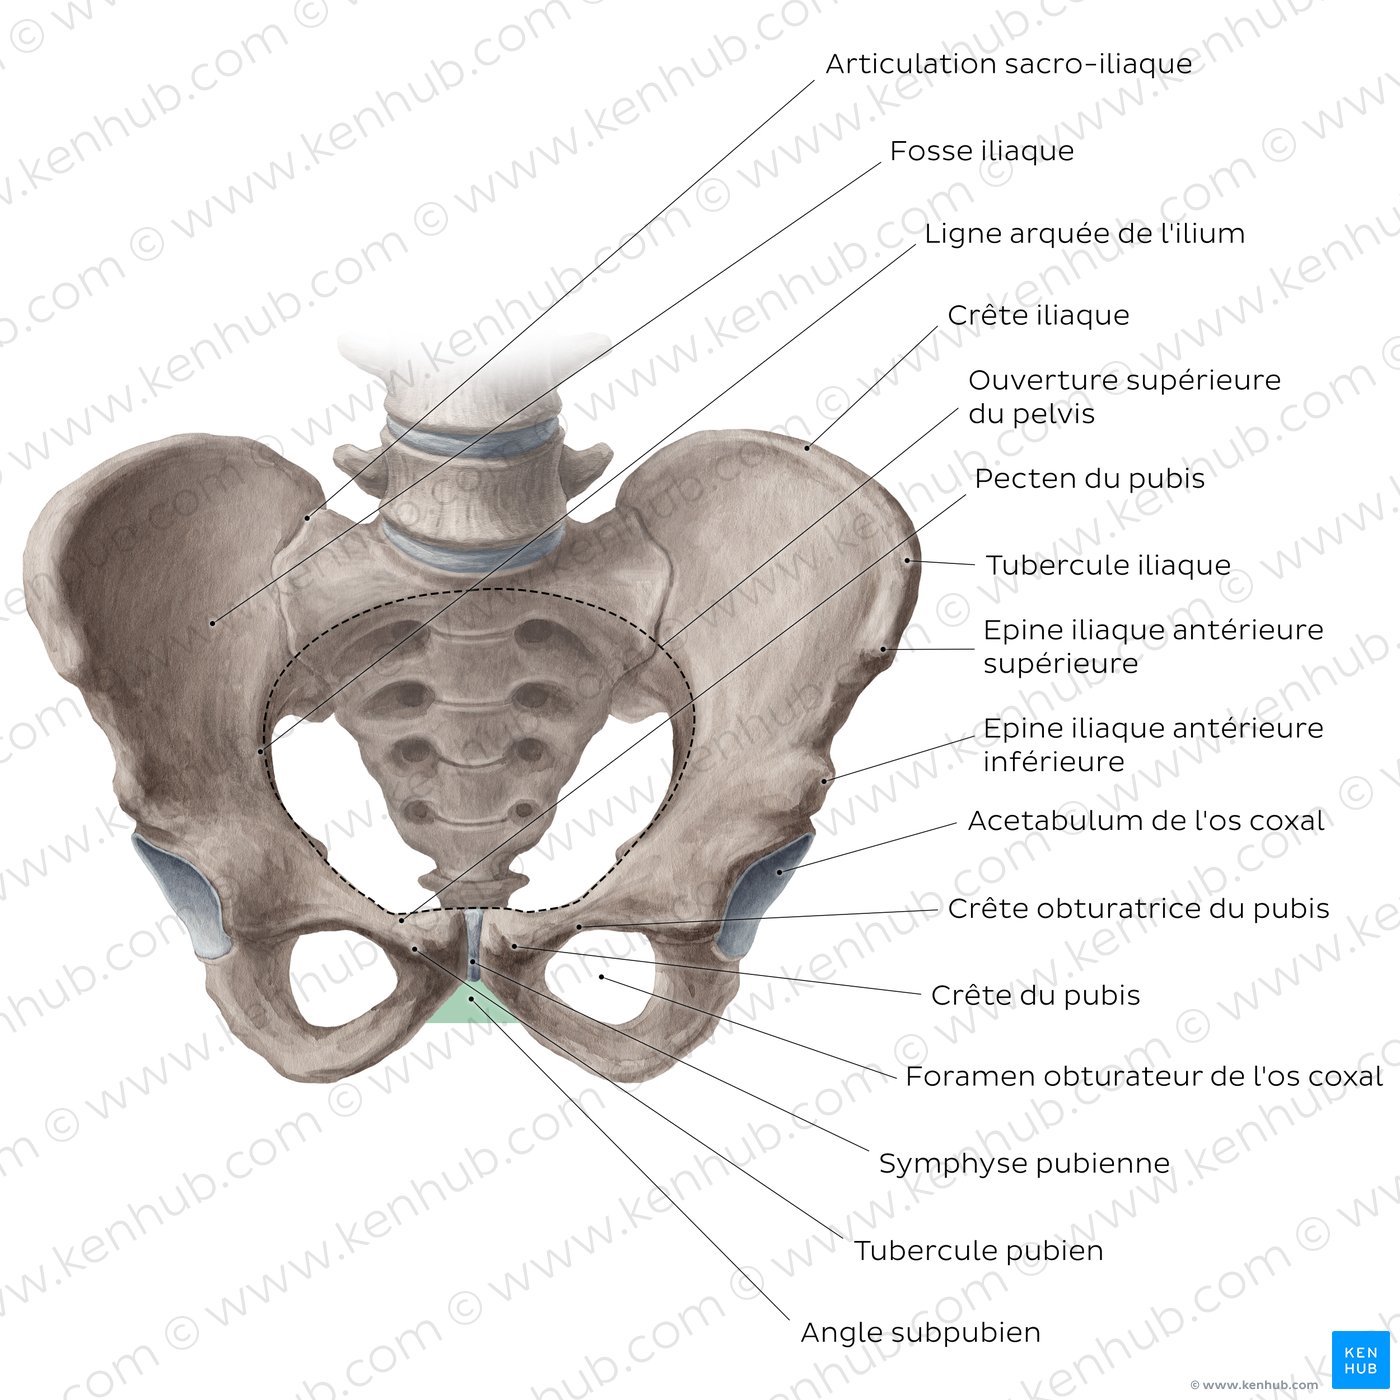 Anatomie des os du bassin et de la hanche